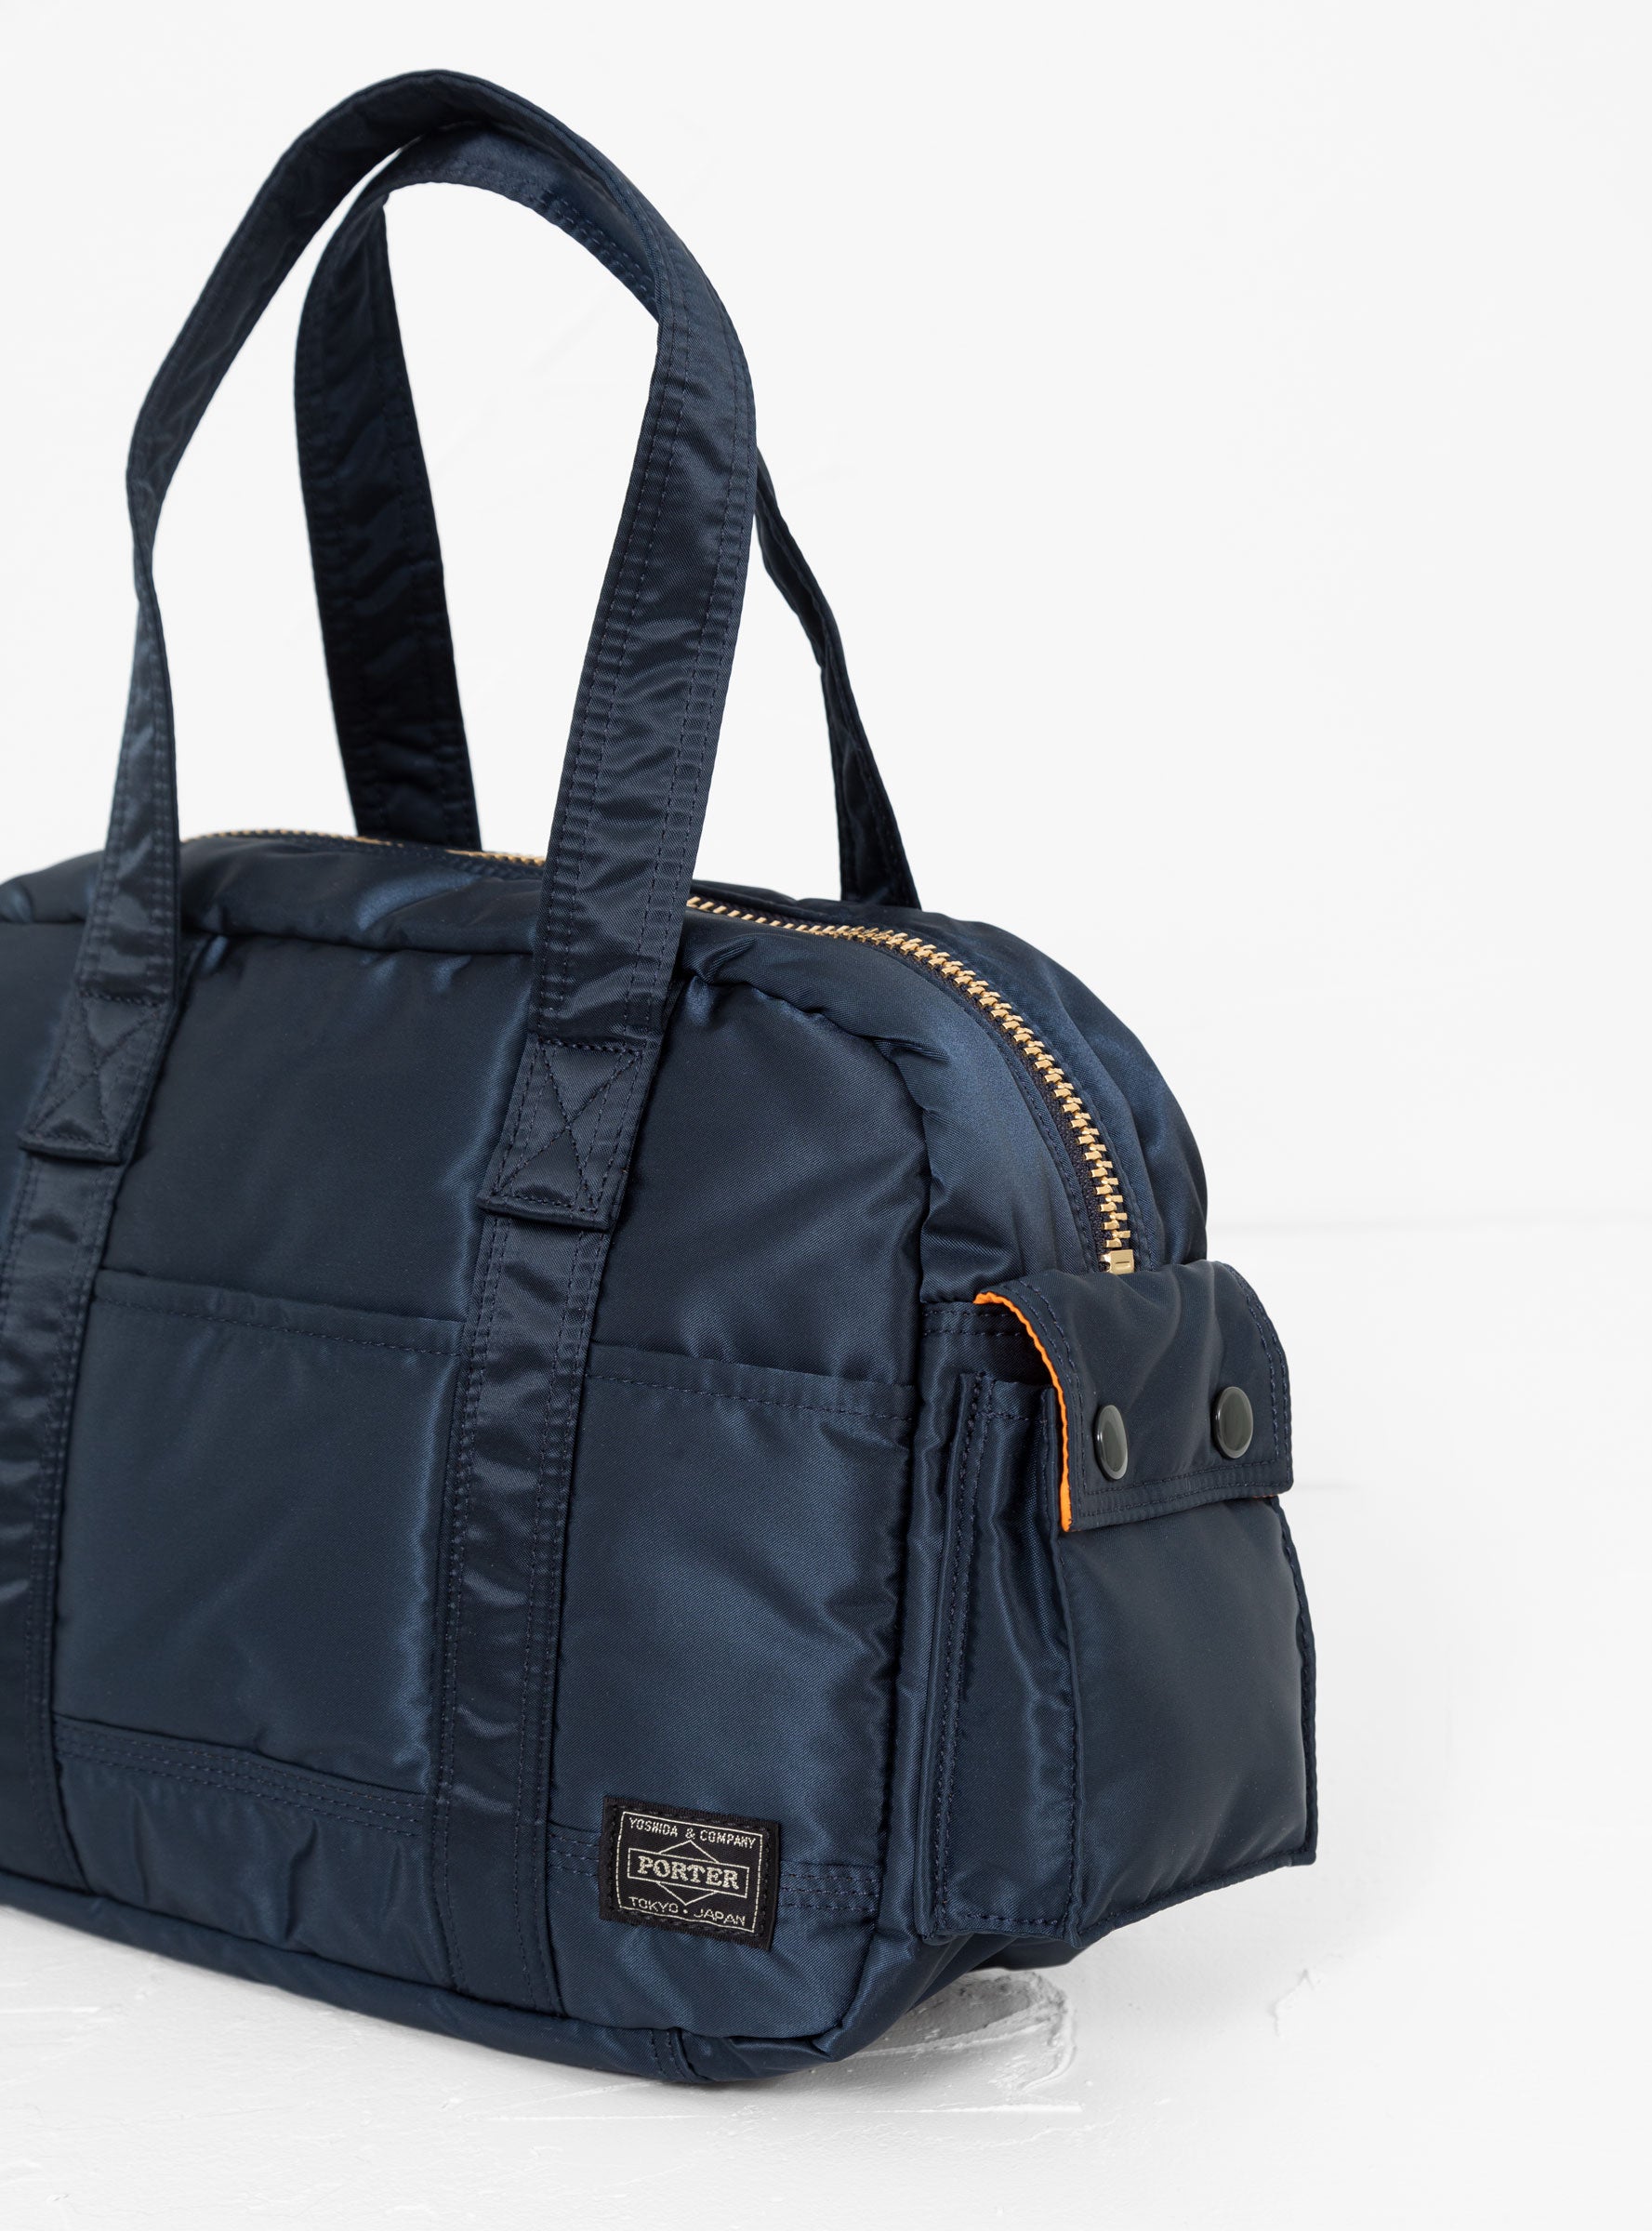 TANKER Duffle Bag Small Iron Blue by Porter Yoshida & Co 